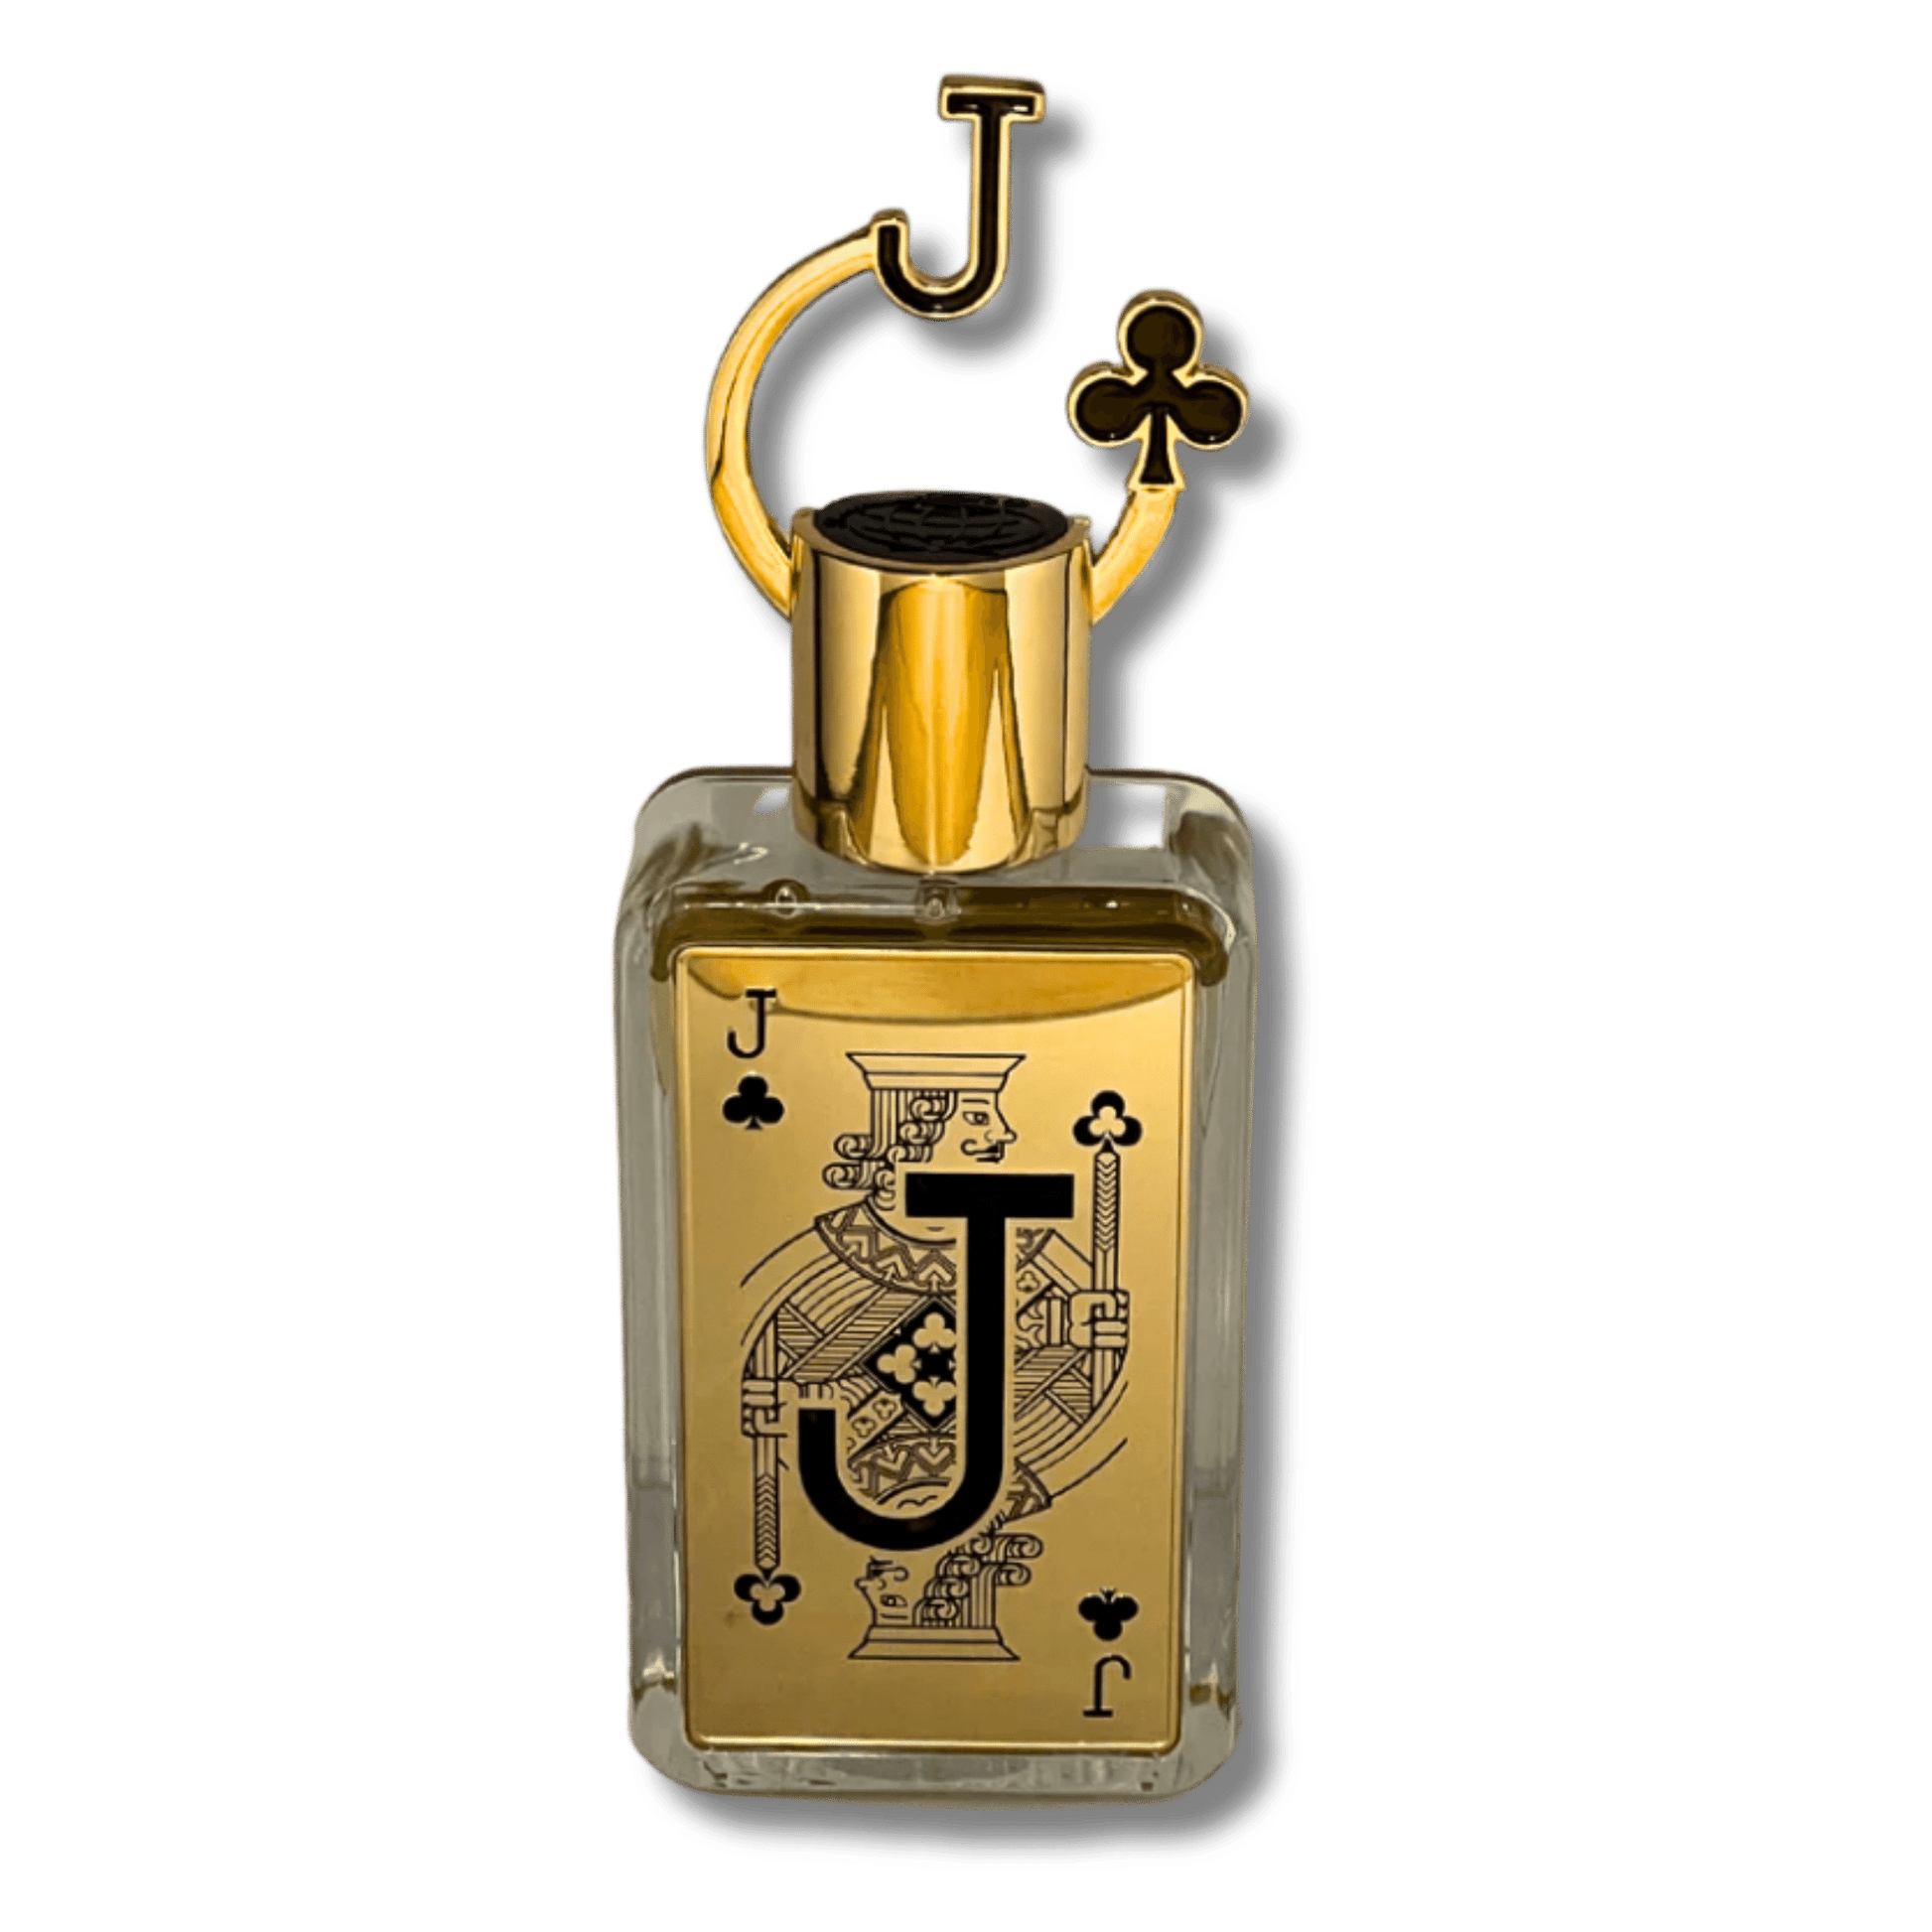 Fragrance World Jack of Clubs 80ml EDP for Men transparent background  Image Illustration for Samples